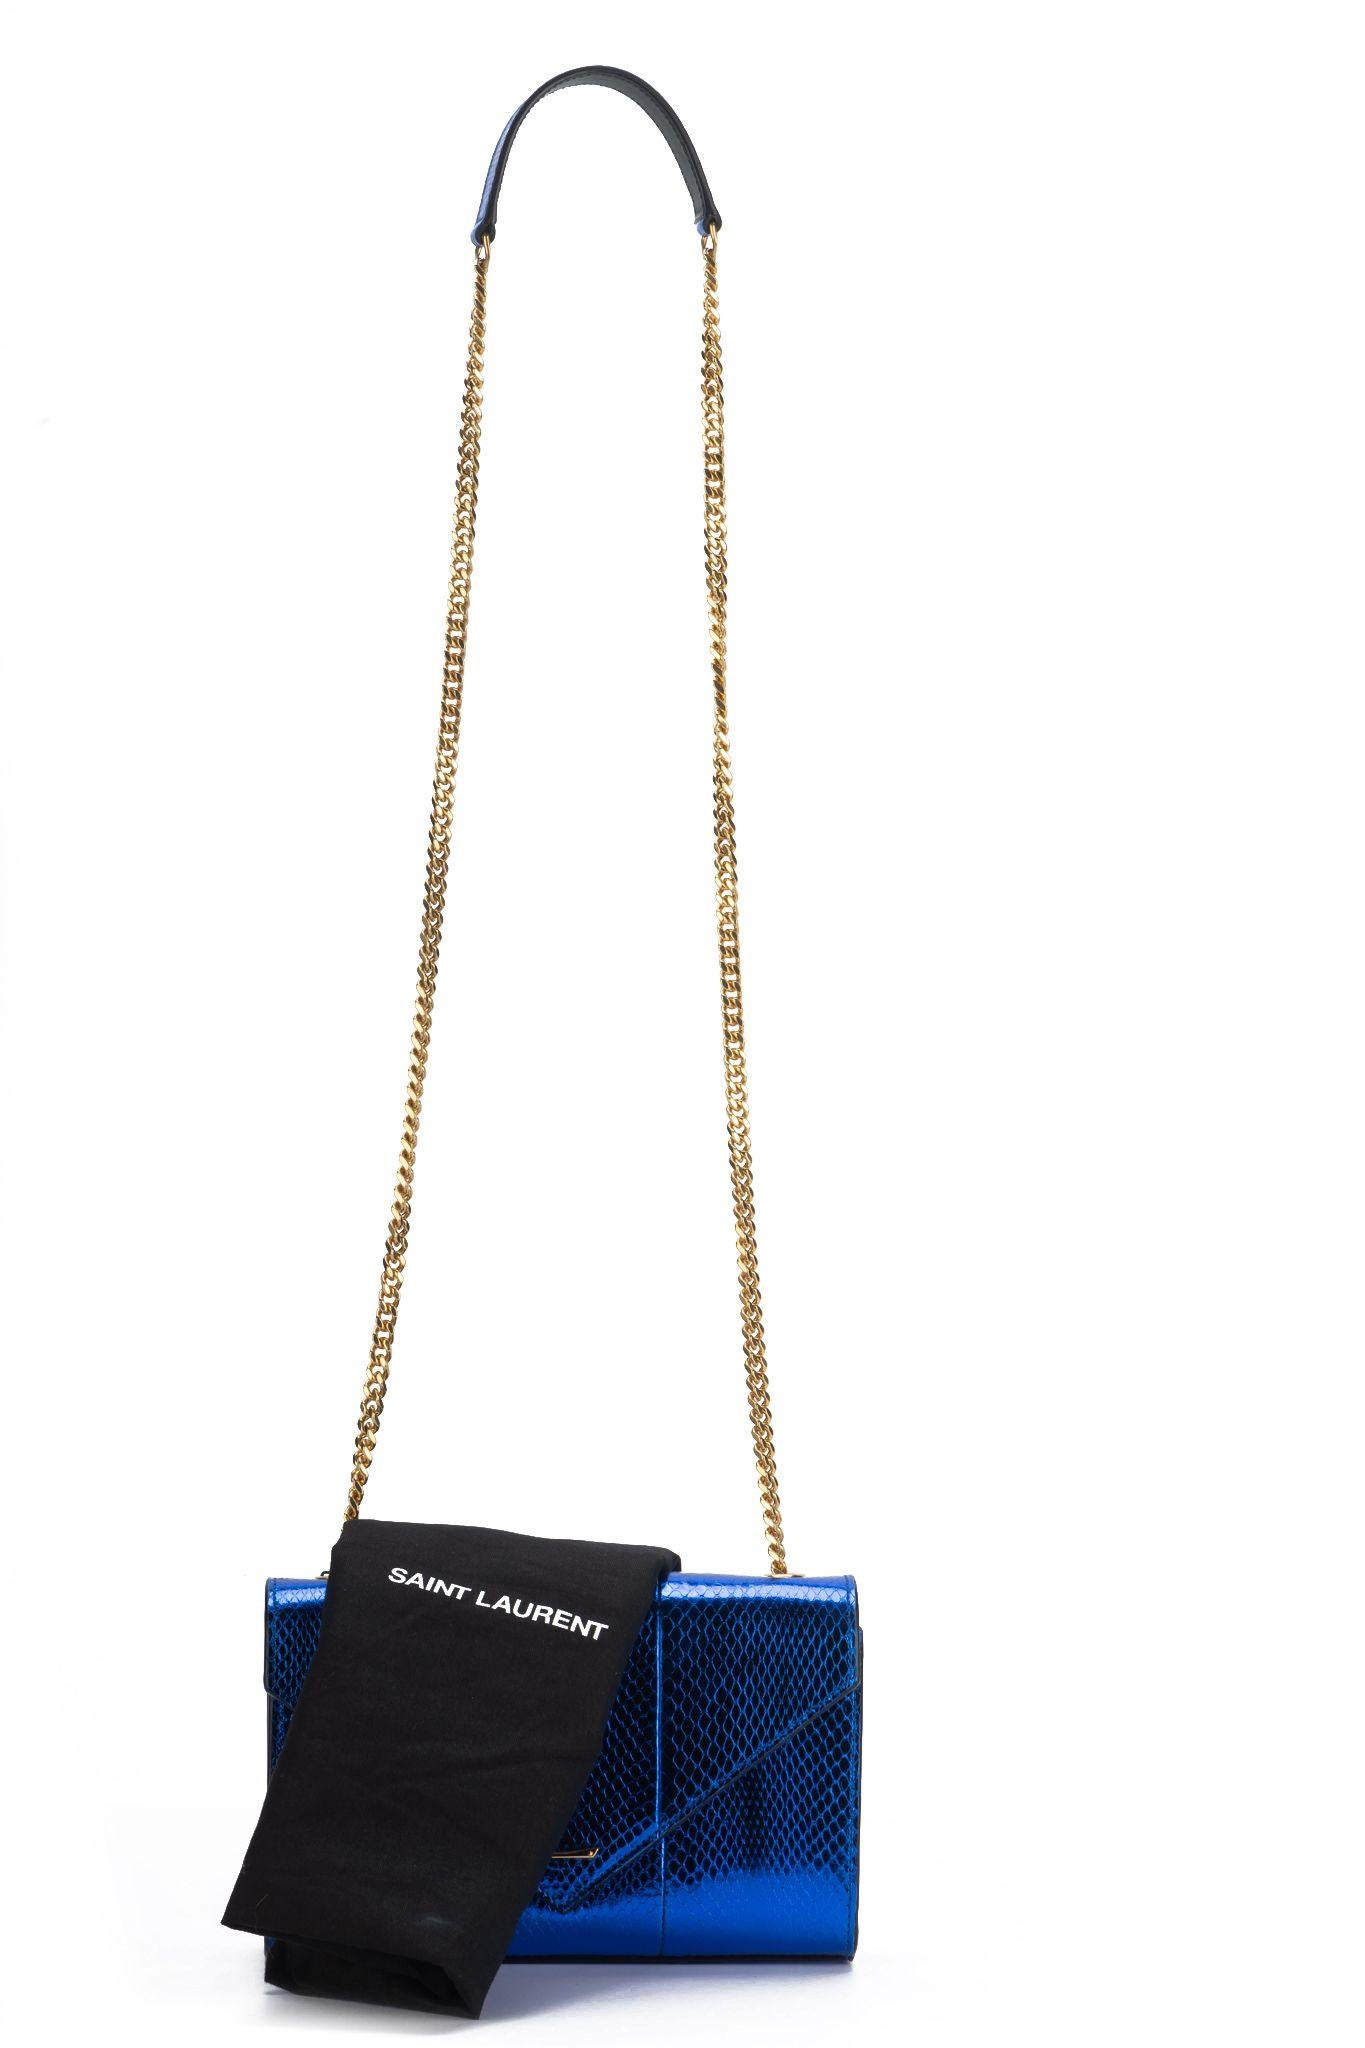 Yves Saint Laurent New Blue Python Cross Body Bag For Sale 7